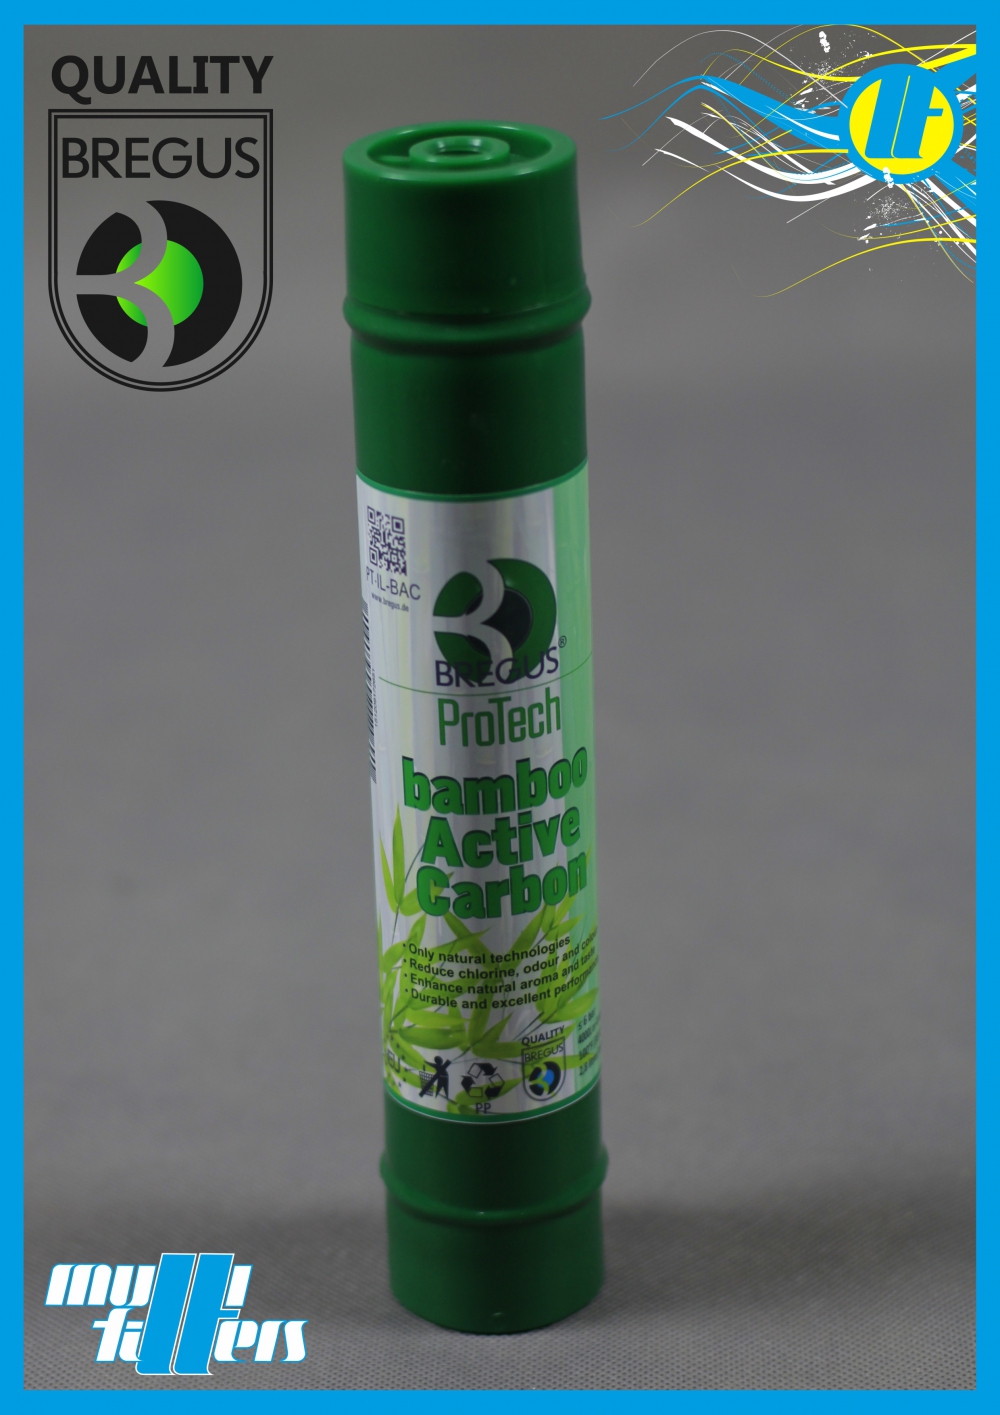 Bregus® ProTech Bamboo Active Carbon - 3